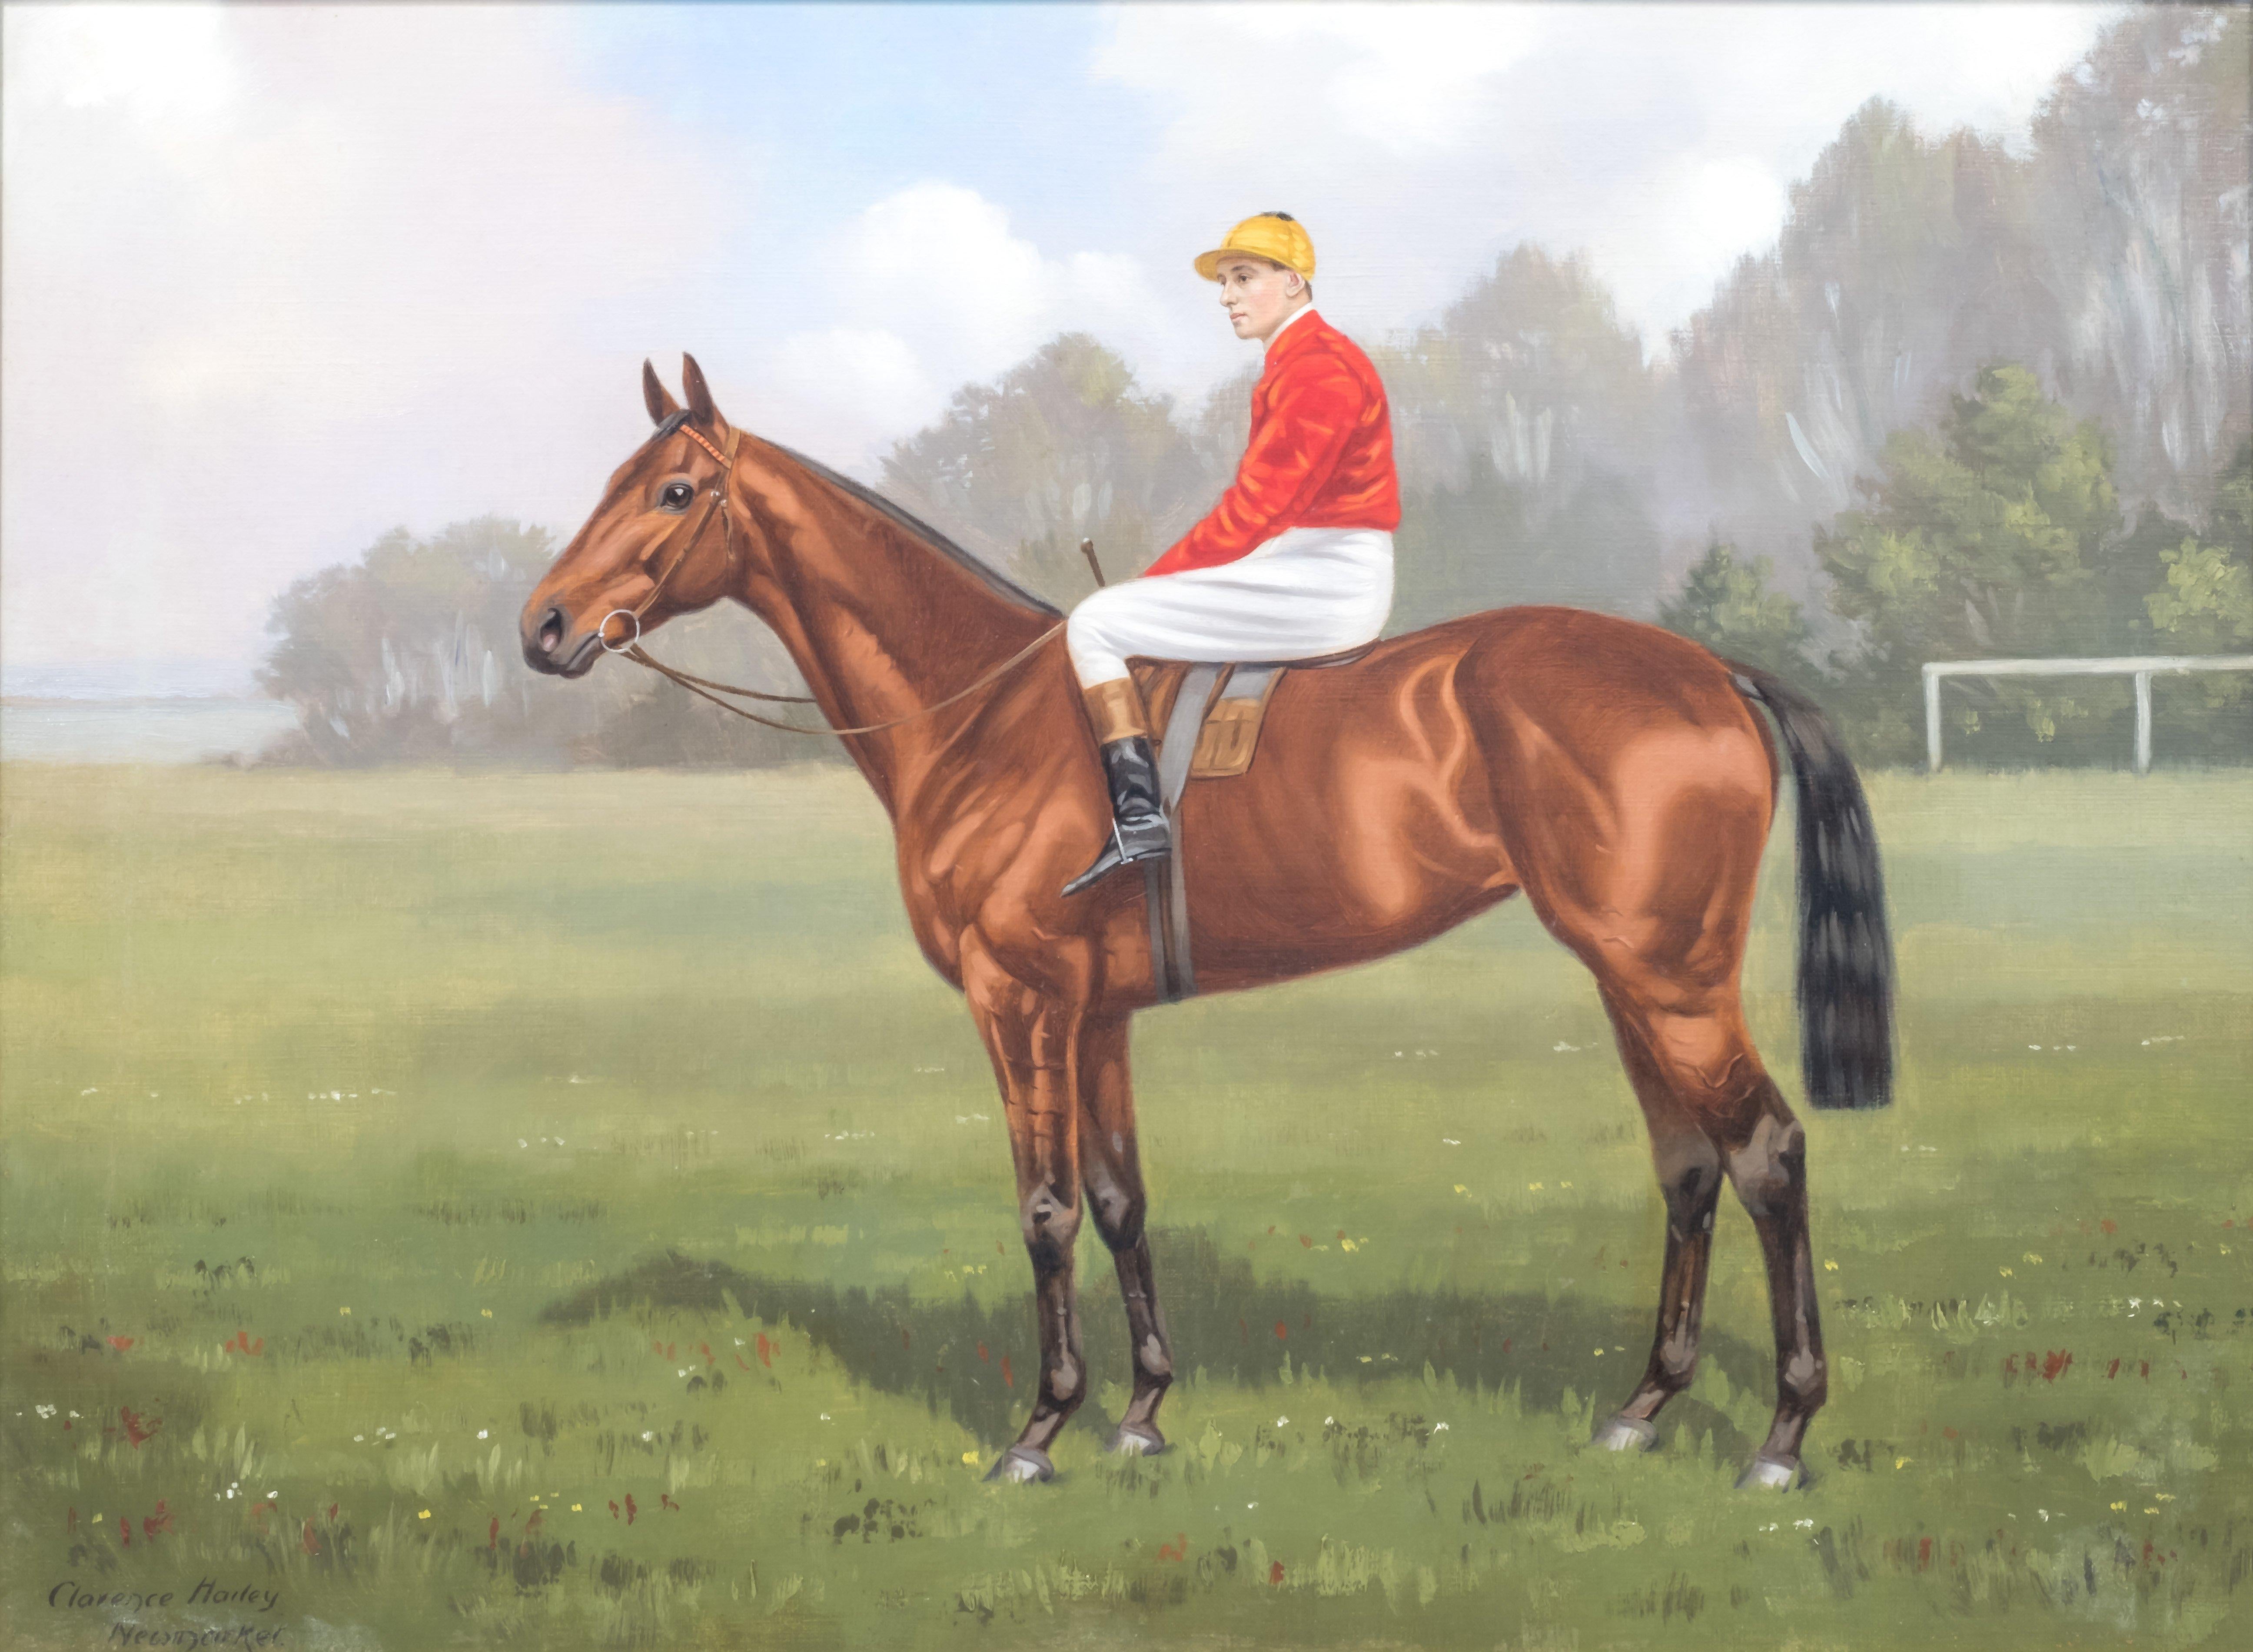 Clarence Hailey Newmarket (Brite, geboren 1867-1949), berühmt für seine Bilder von Hengsten und Jockeys
Porträts eines Jockeys und eines Rennpferdes 
Newmarket, Suffolk, England, signiert in der linken Ecke. Eine davon datiert von